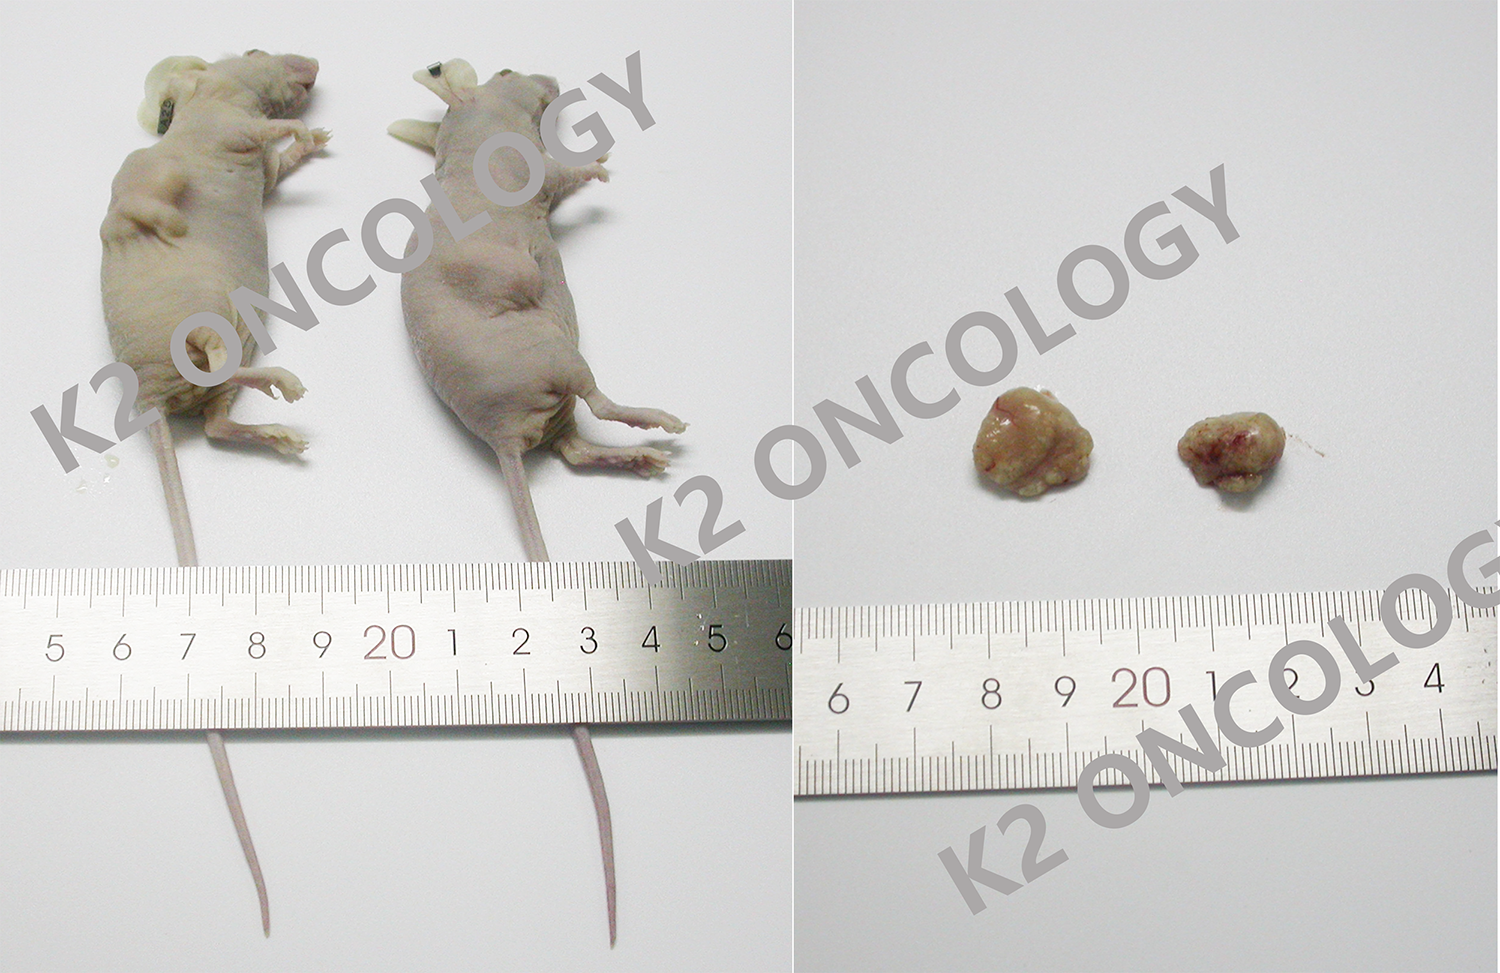 结直肠癌类器官KO-27999 PDOX小鼠体内成瘤照片.png